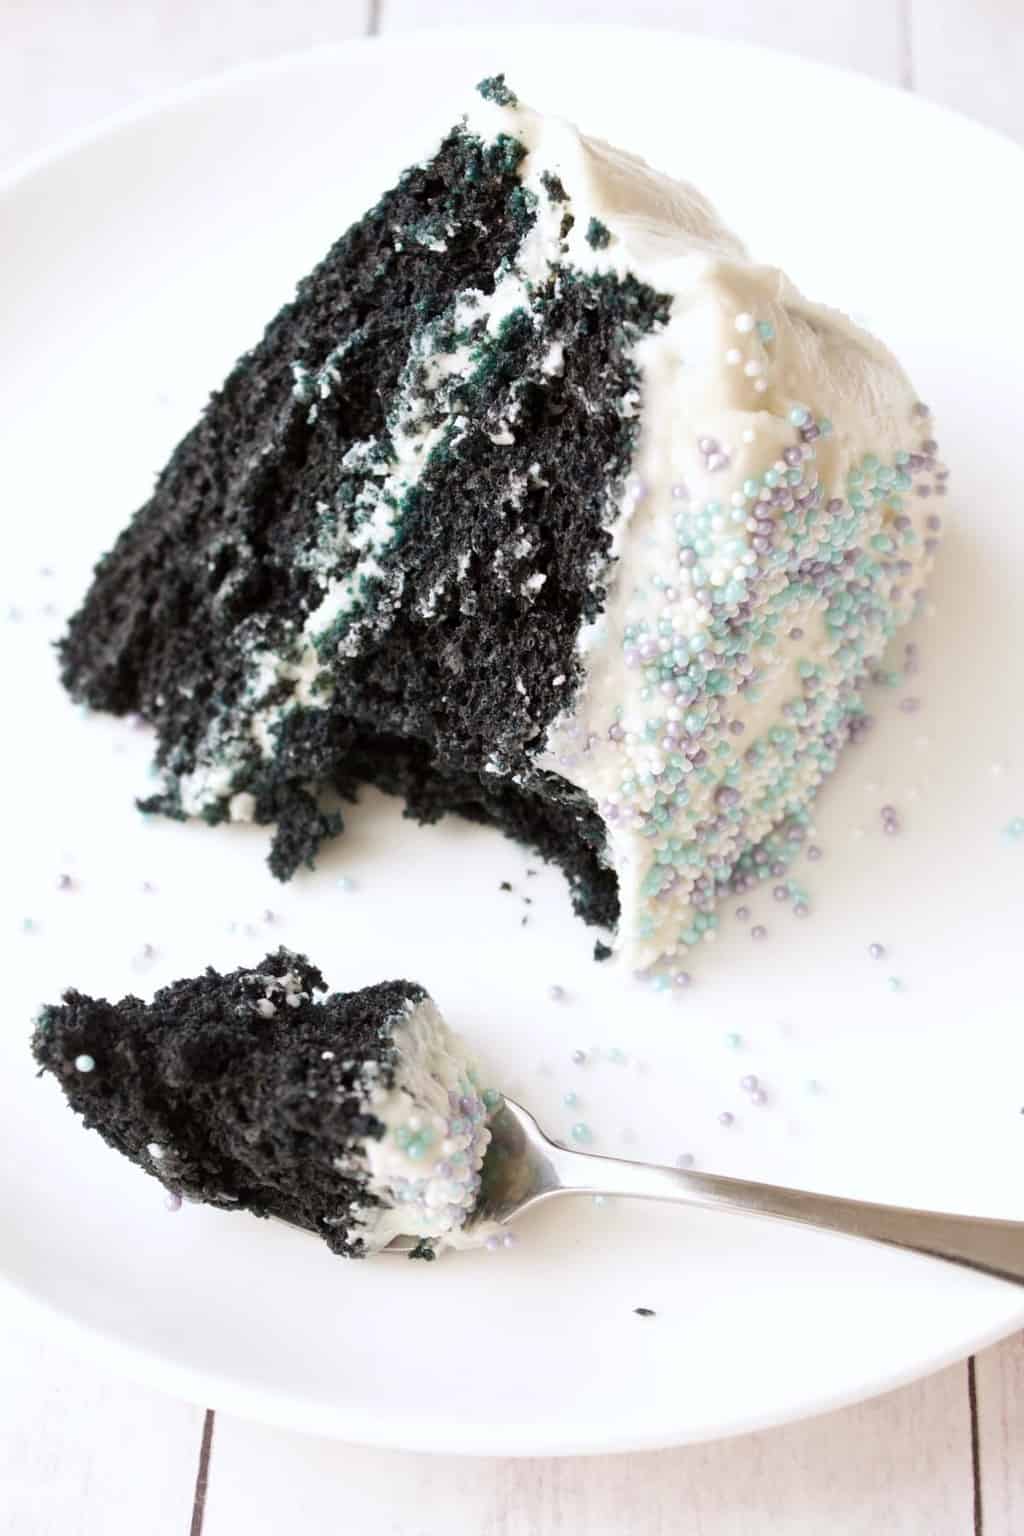 Vegan Blue Velvet Cake. Midnight blue cake frosted with vegan vanilla frosting. Simple, moist and delicious! #vegan #lovingitvegan #dessert #cake #bluevelvet